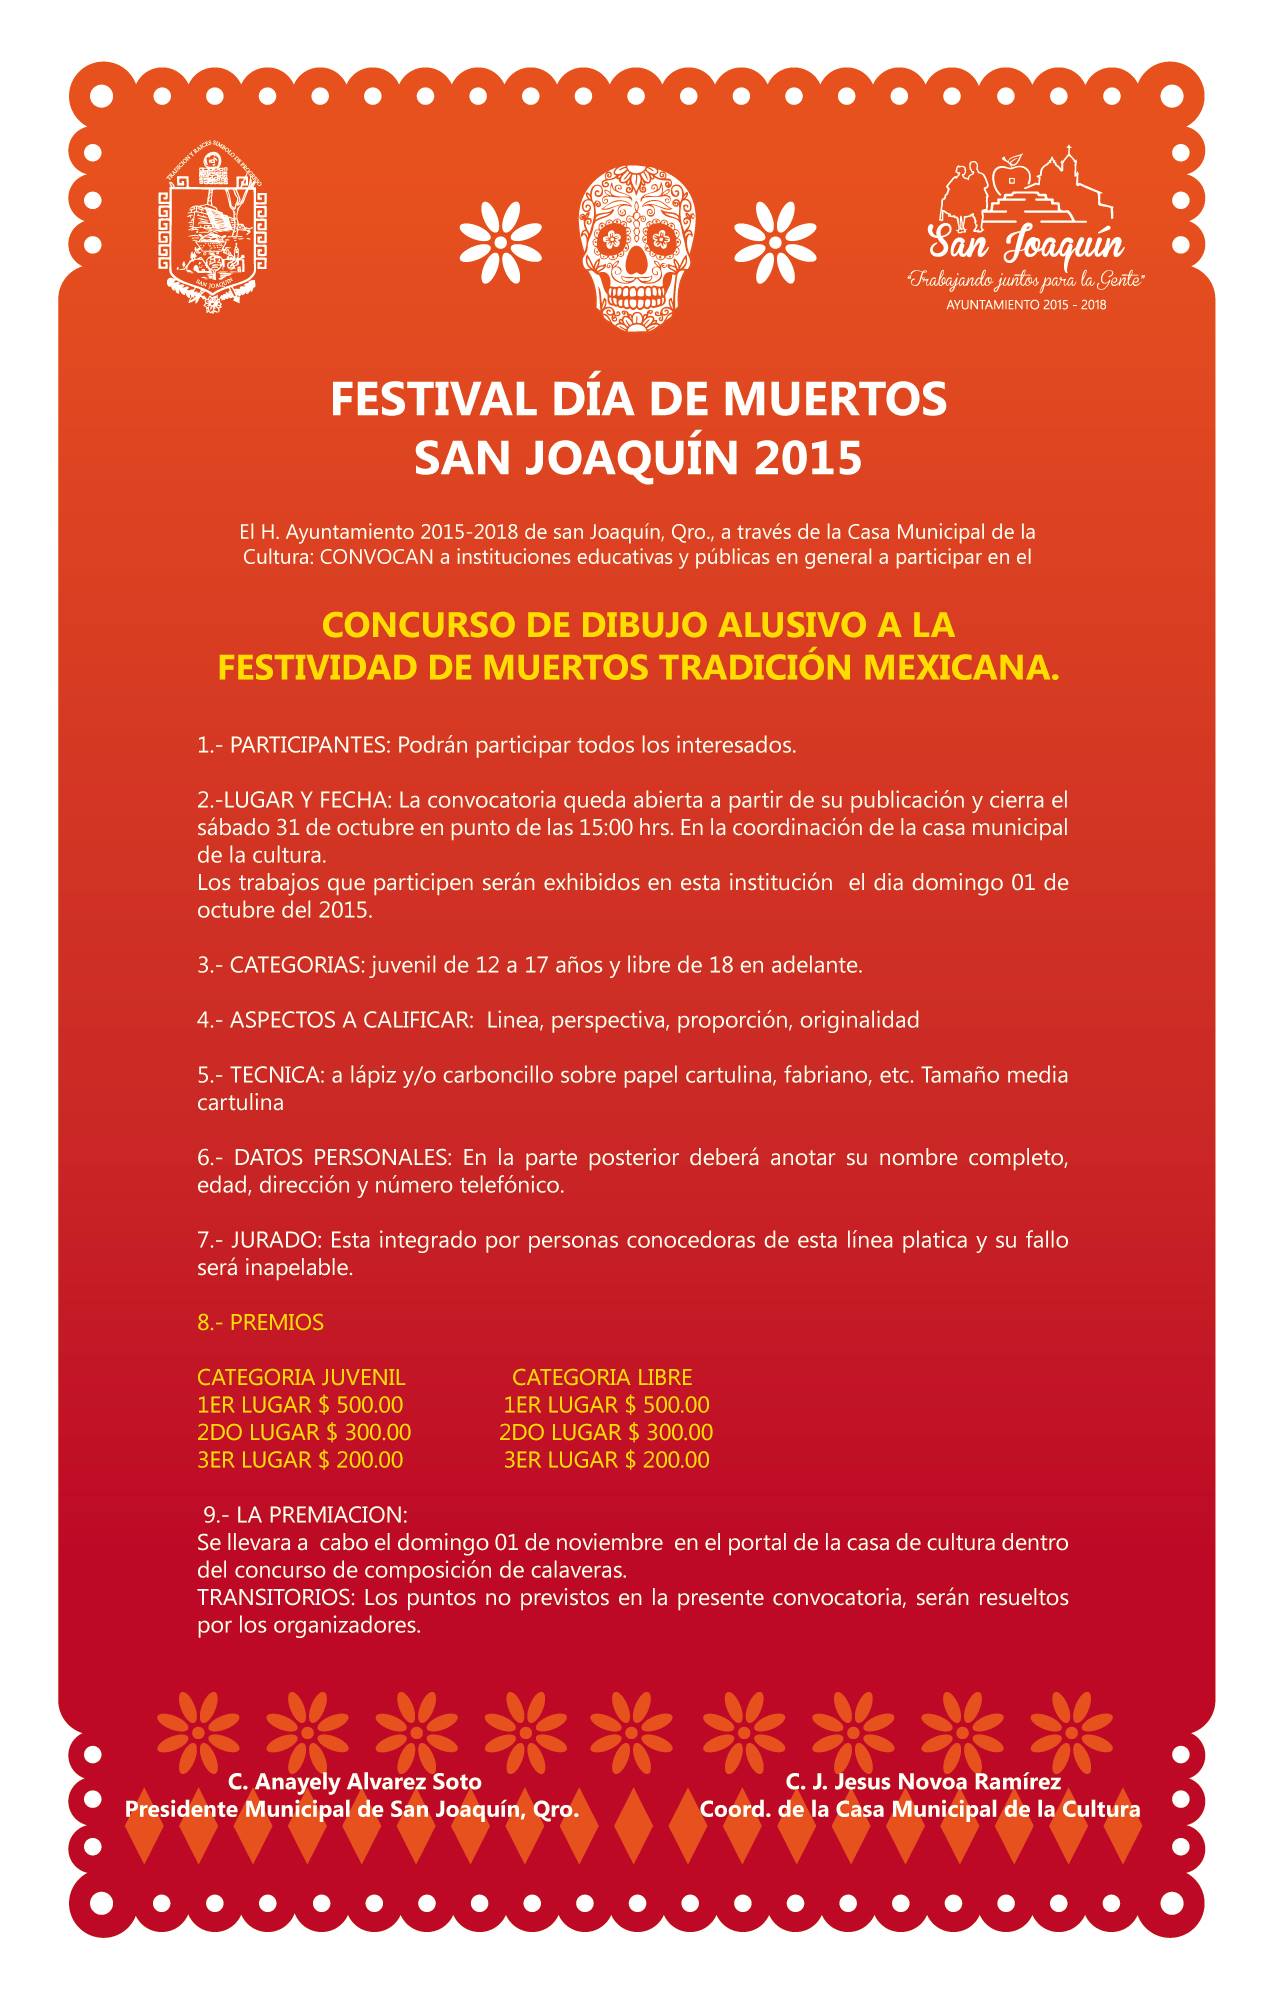 Festival de Muertos 2015 San Joaquín, Qro. 2015